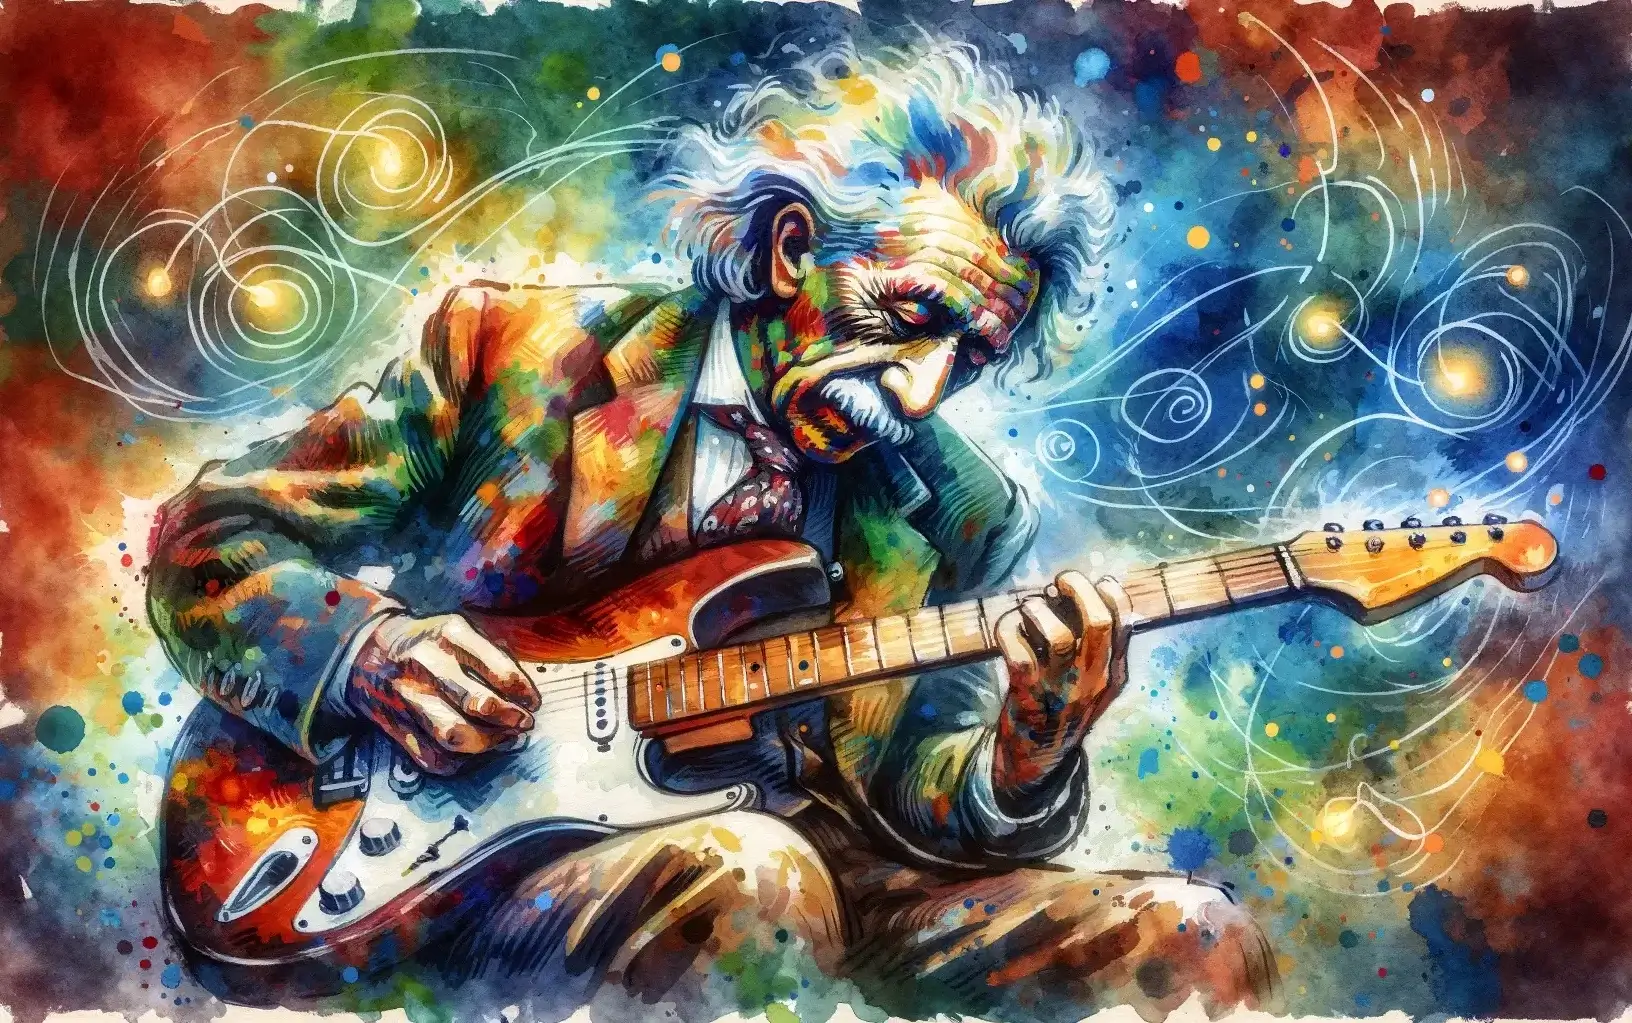 Albert Einstein playing electric guitar.